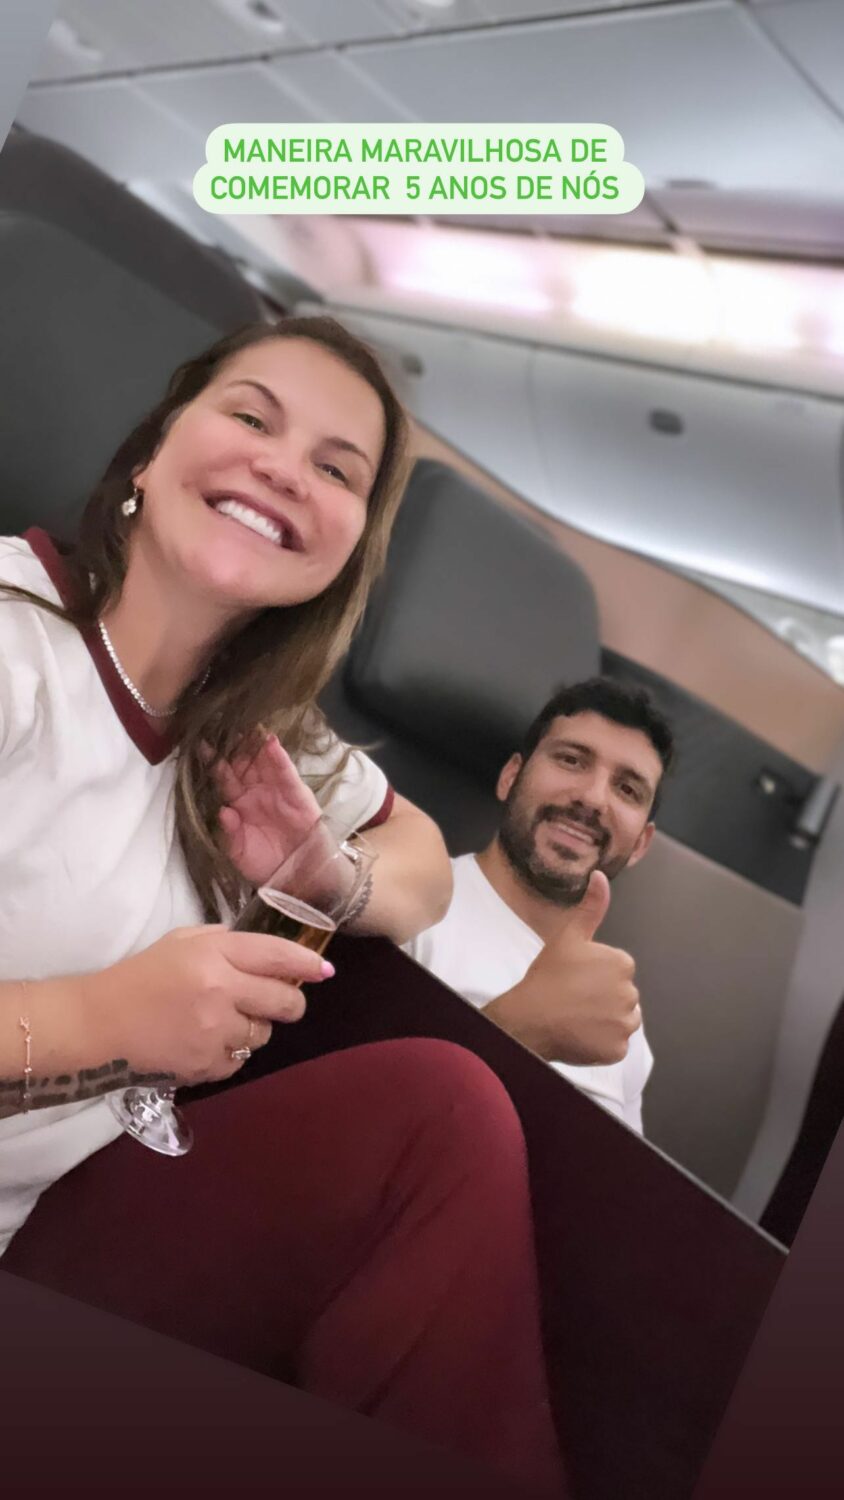 Em dia especial, Katia Aveiro viaja até ao Qatar em avião de luxo: &#8220;Maneira maravilhosa de comemorar&#8230;&#8221;